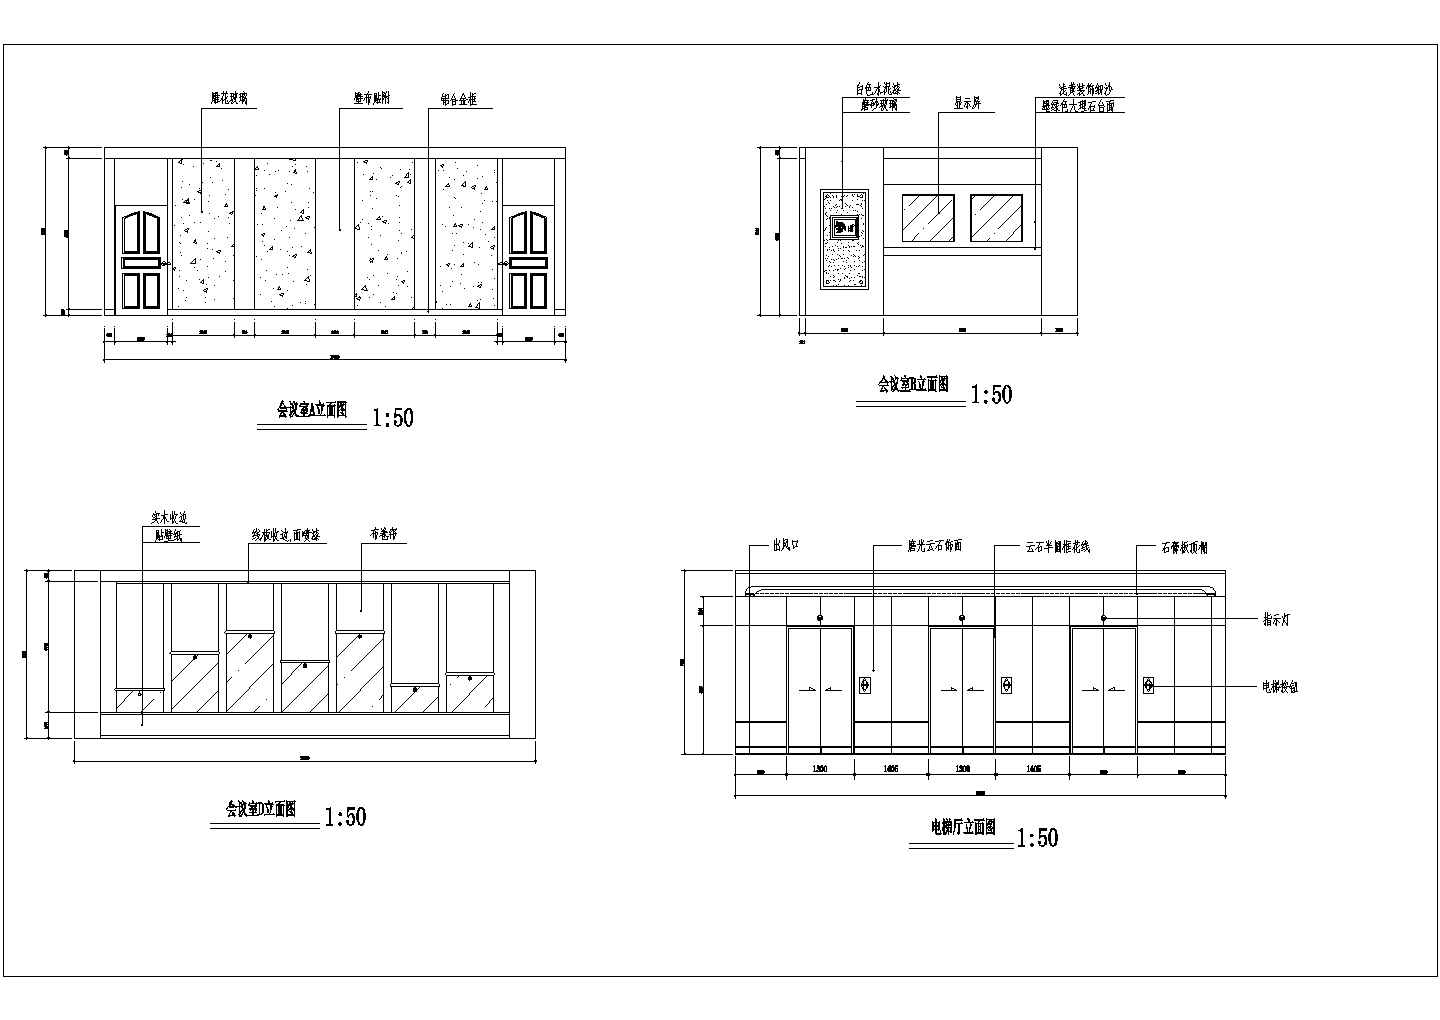 北京某大学互联网公司办公室空间装修设计CAD图纸